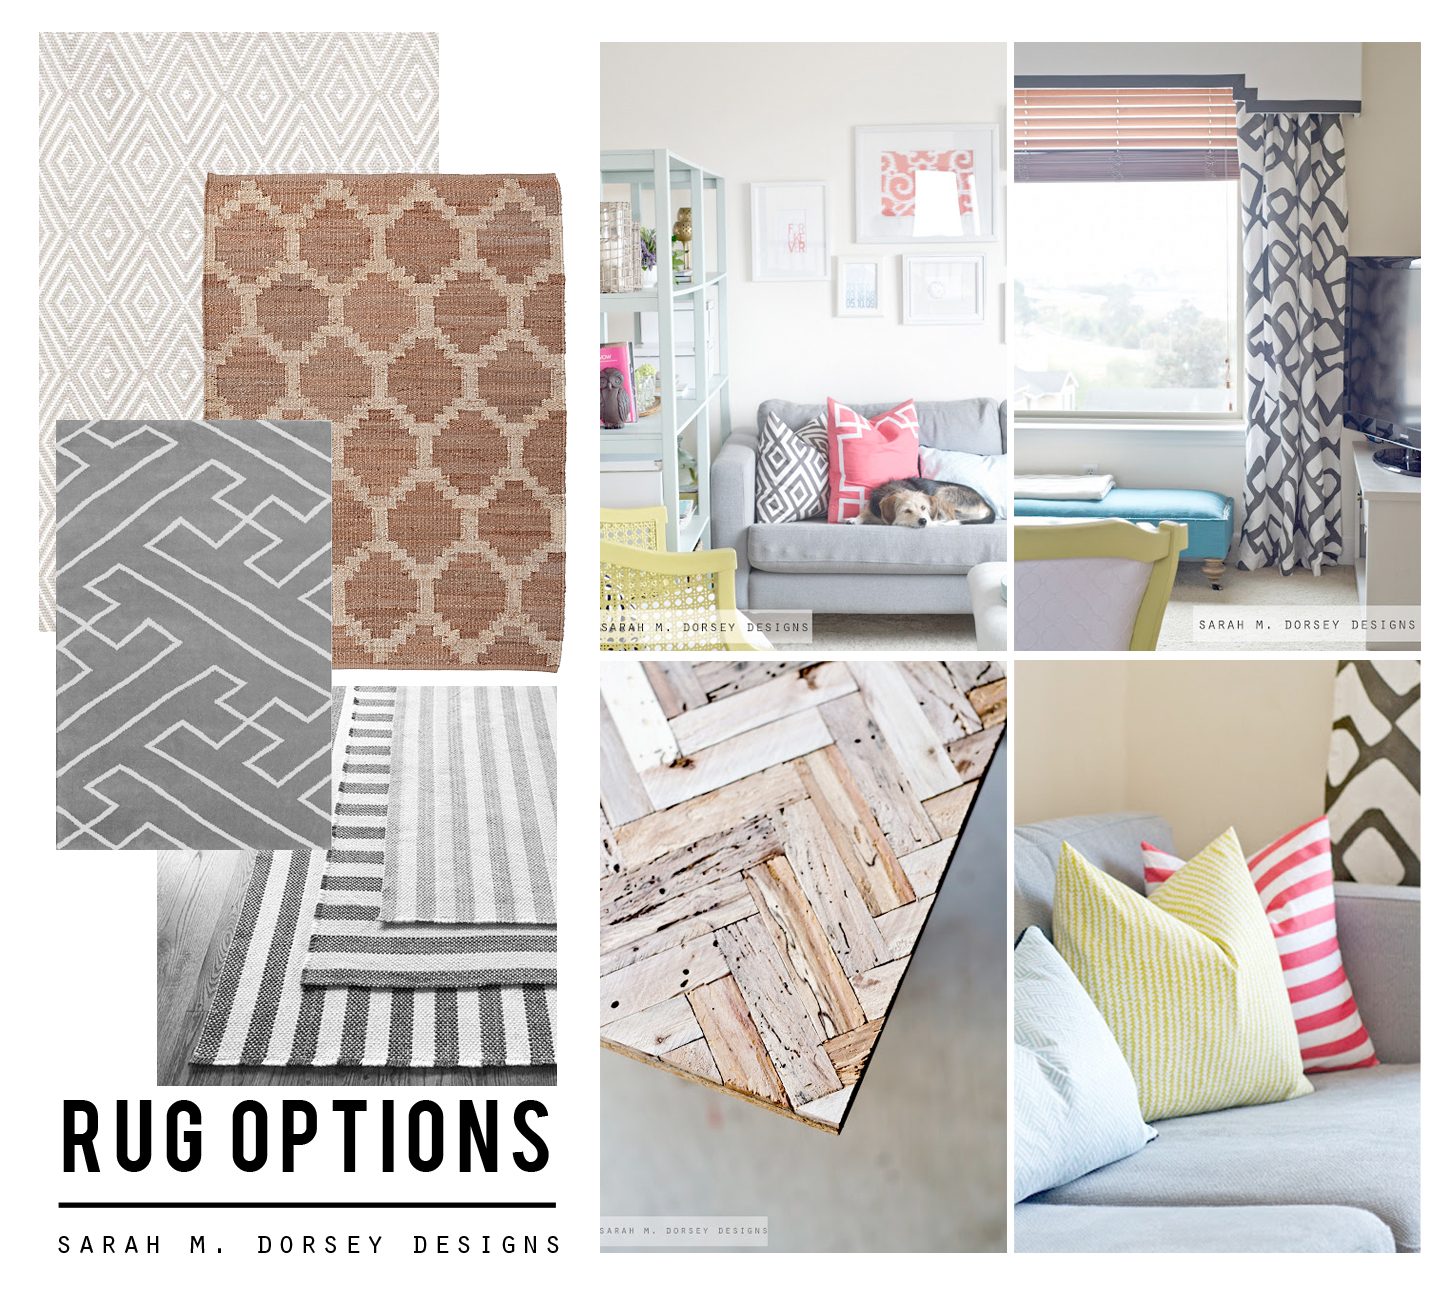 sarah m. dorsey designs: DIY Rug Ideas for the Living Room